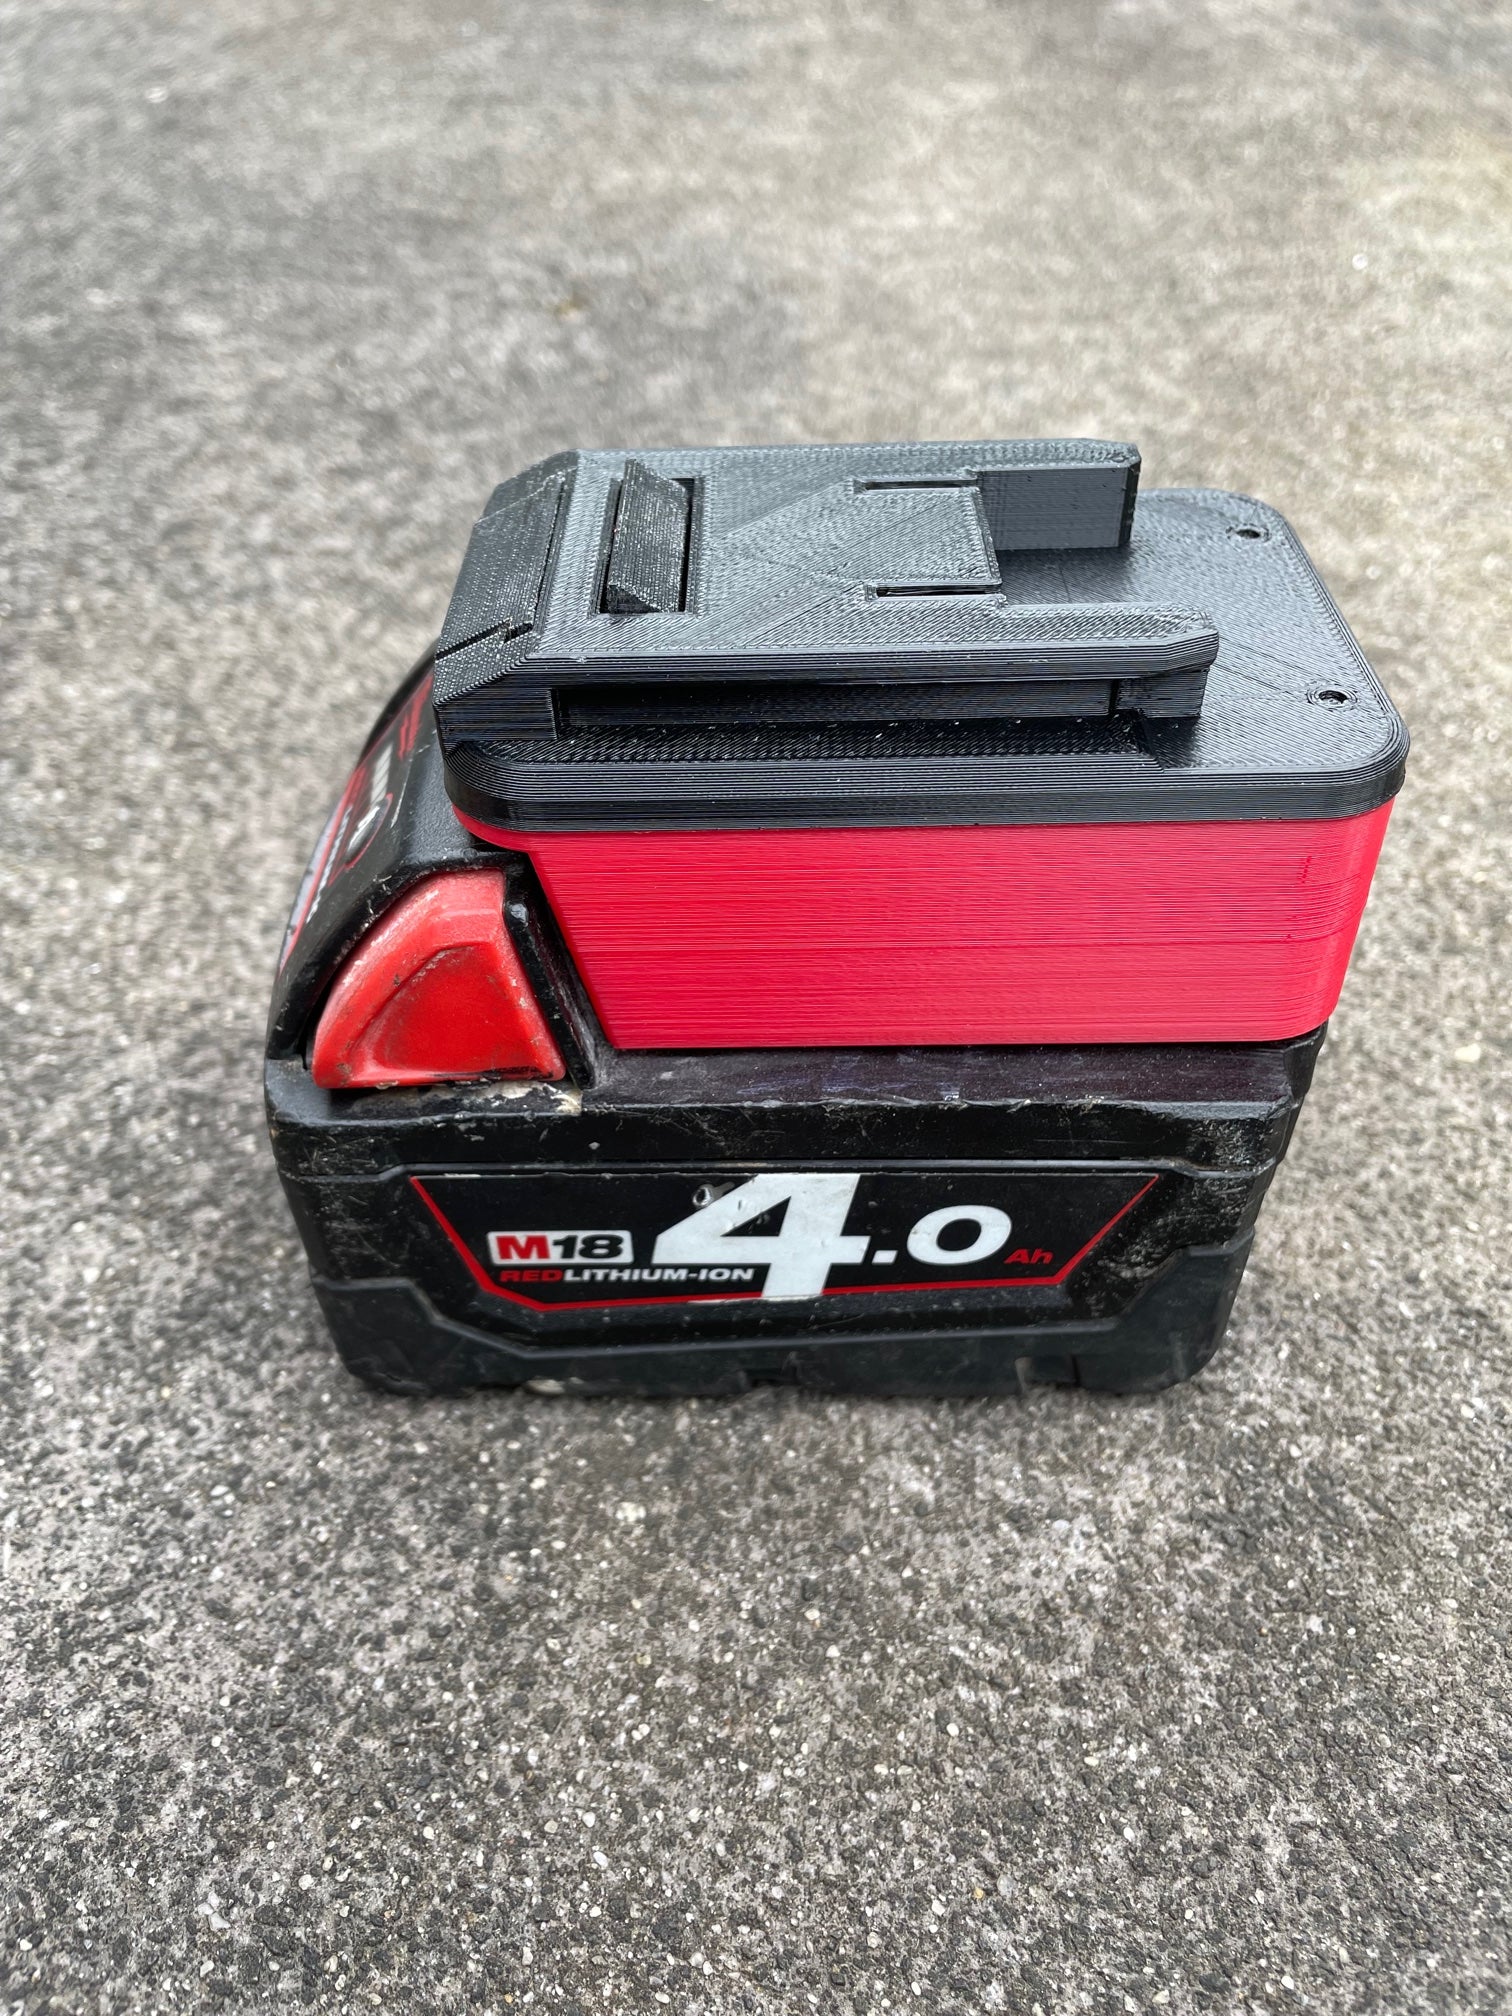 Milwaukee 18v battery adaptor to Ozito tools